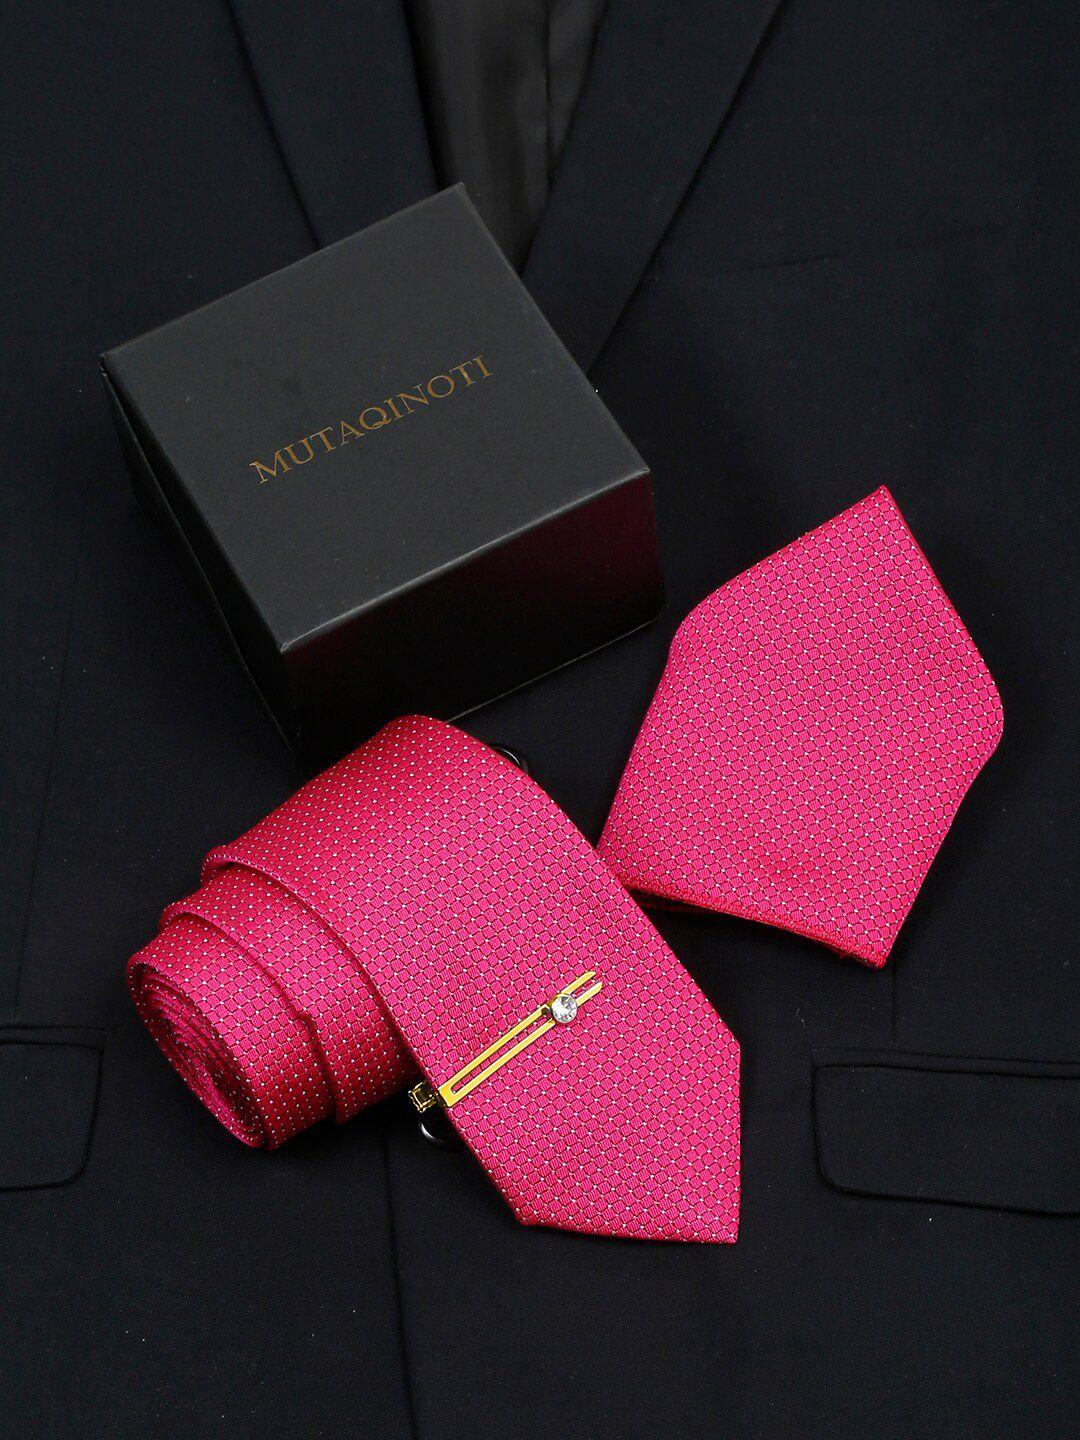 mutaqinoti silk necktie accessory gift set